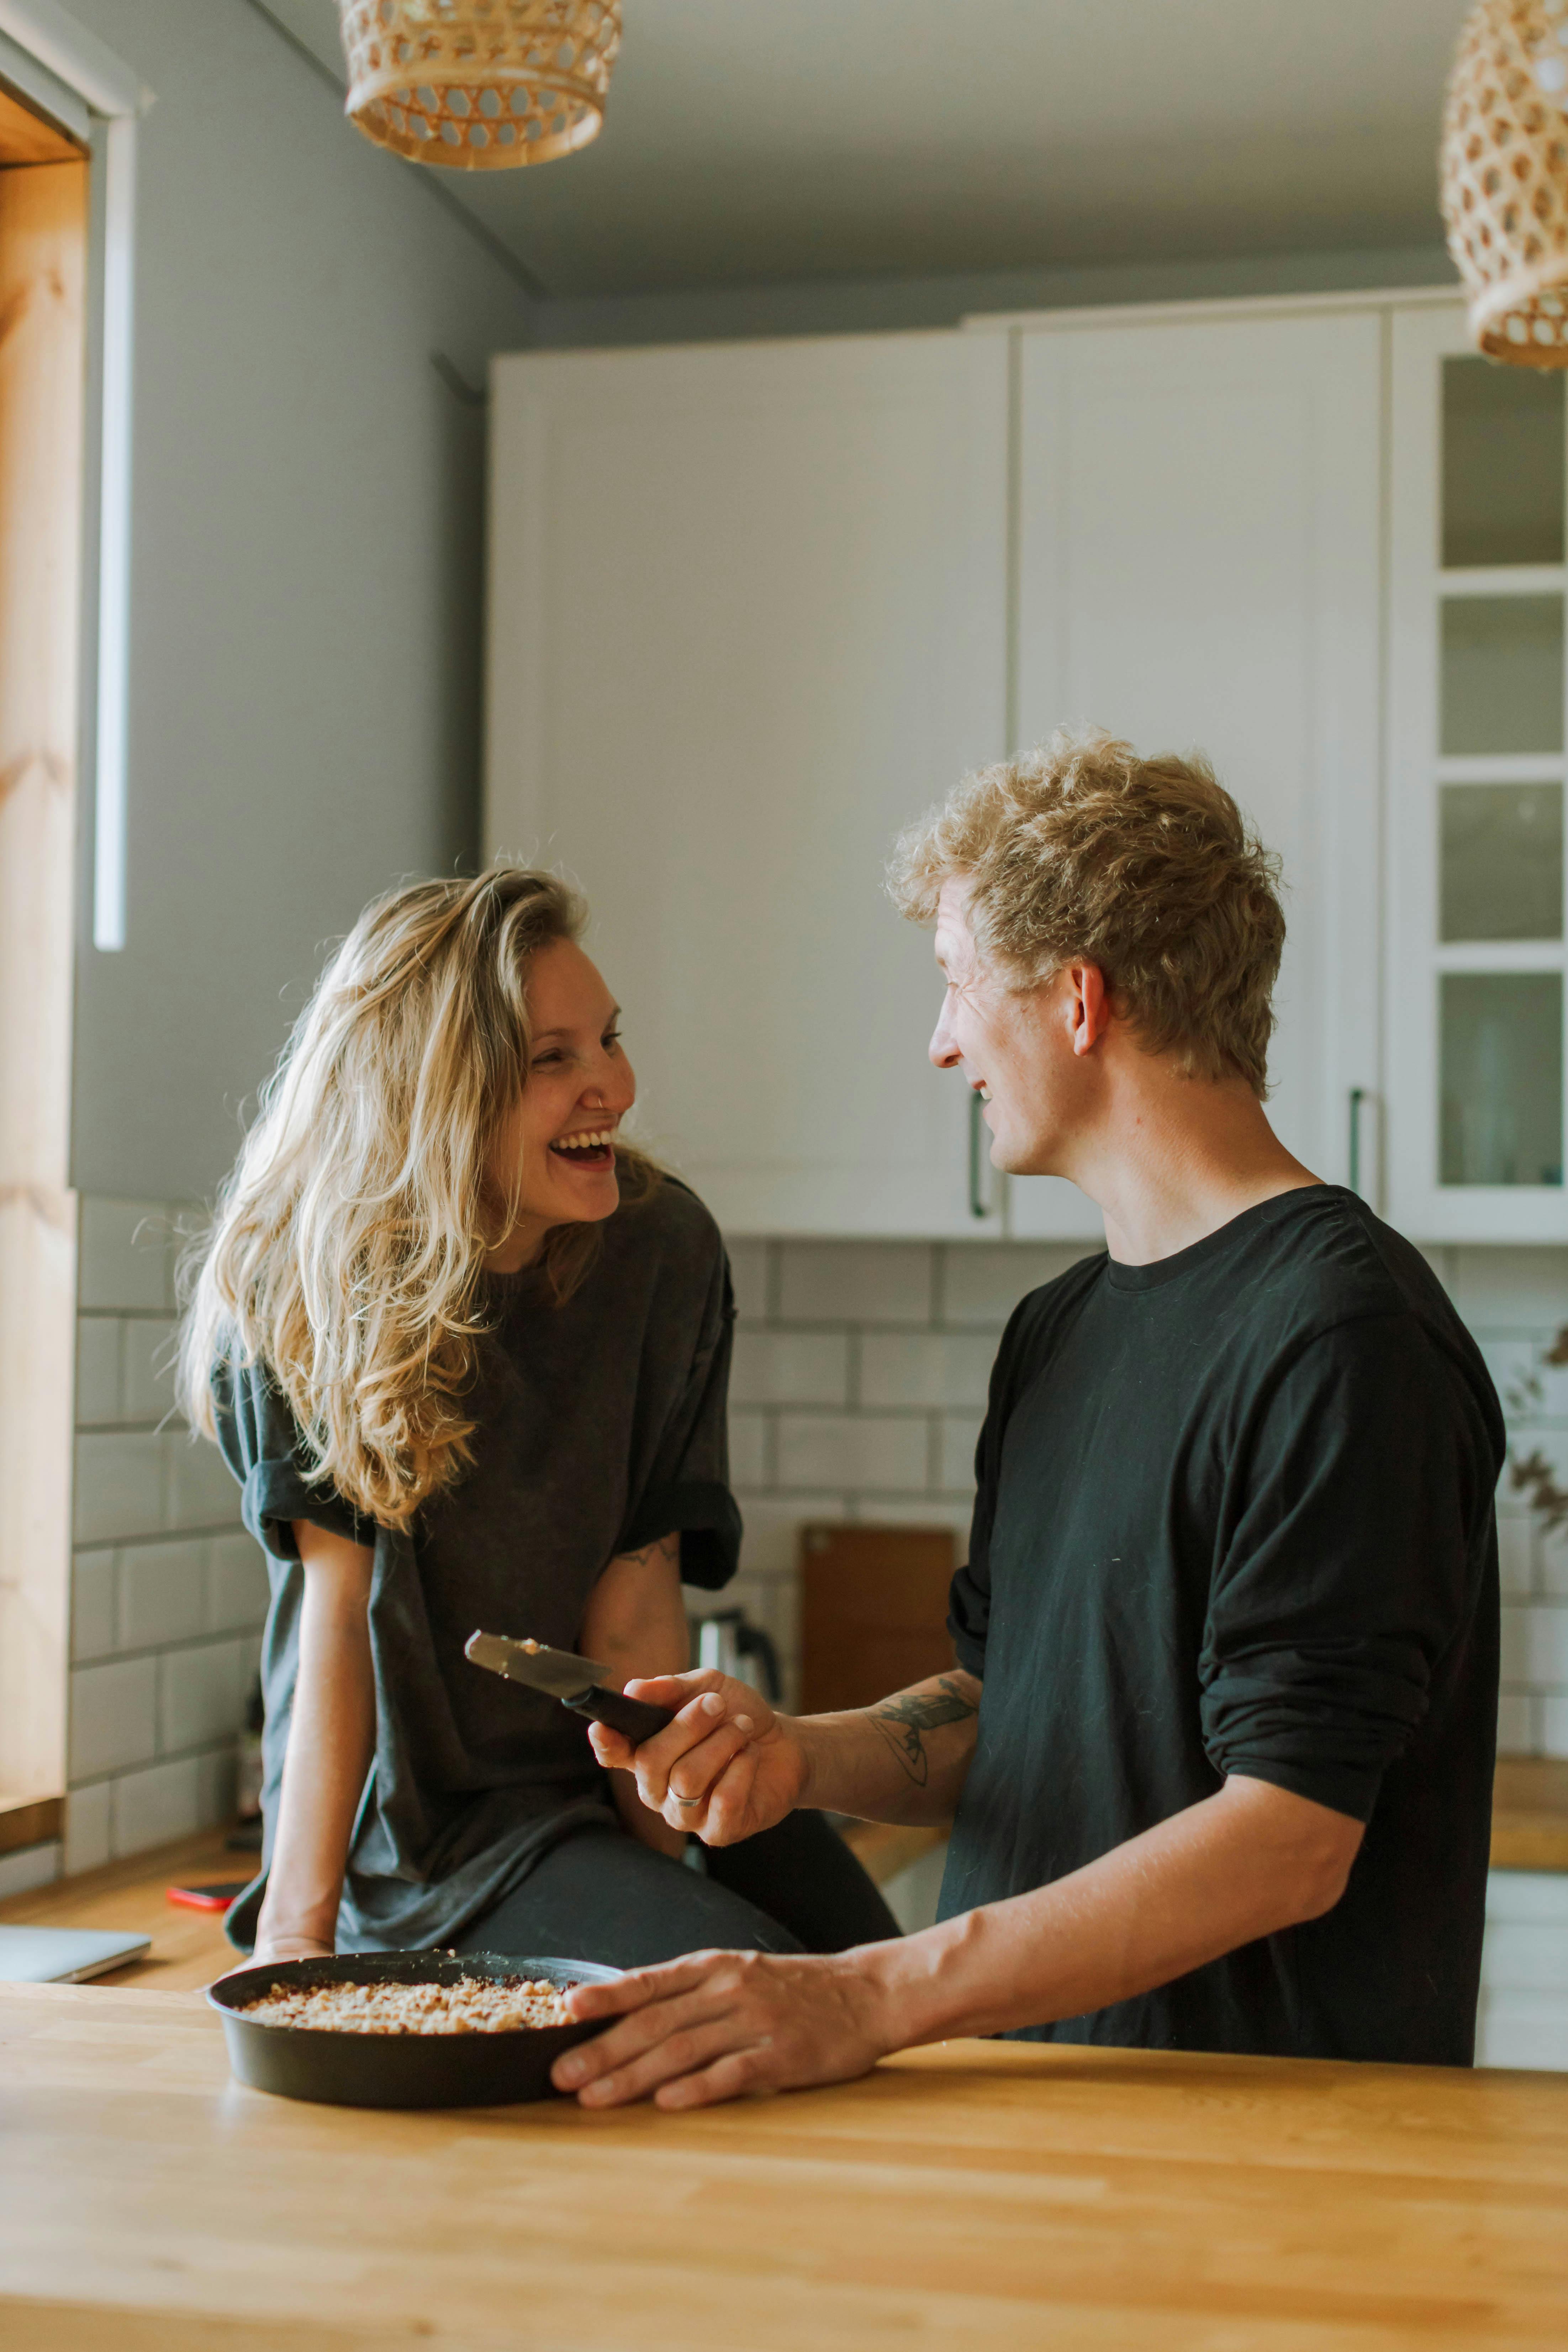 Mann und Frau lachen bei der Zubereitung einer Mahlzeit in der Küche | Quelle: Pexels